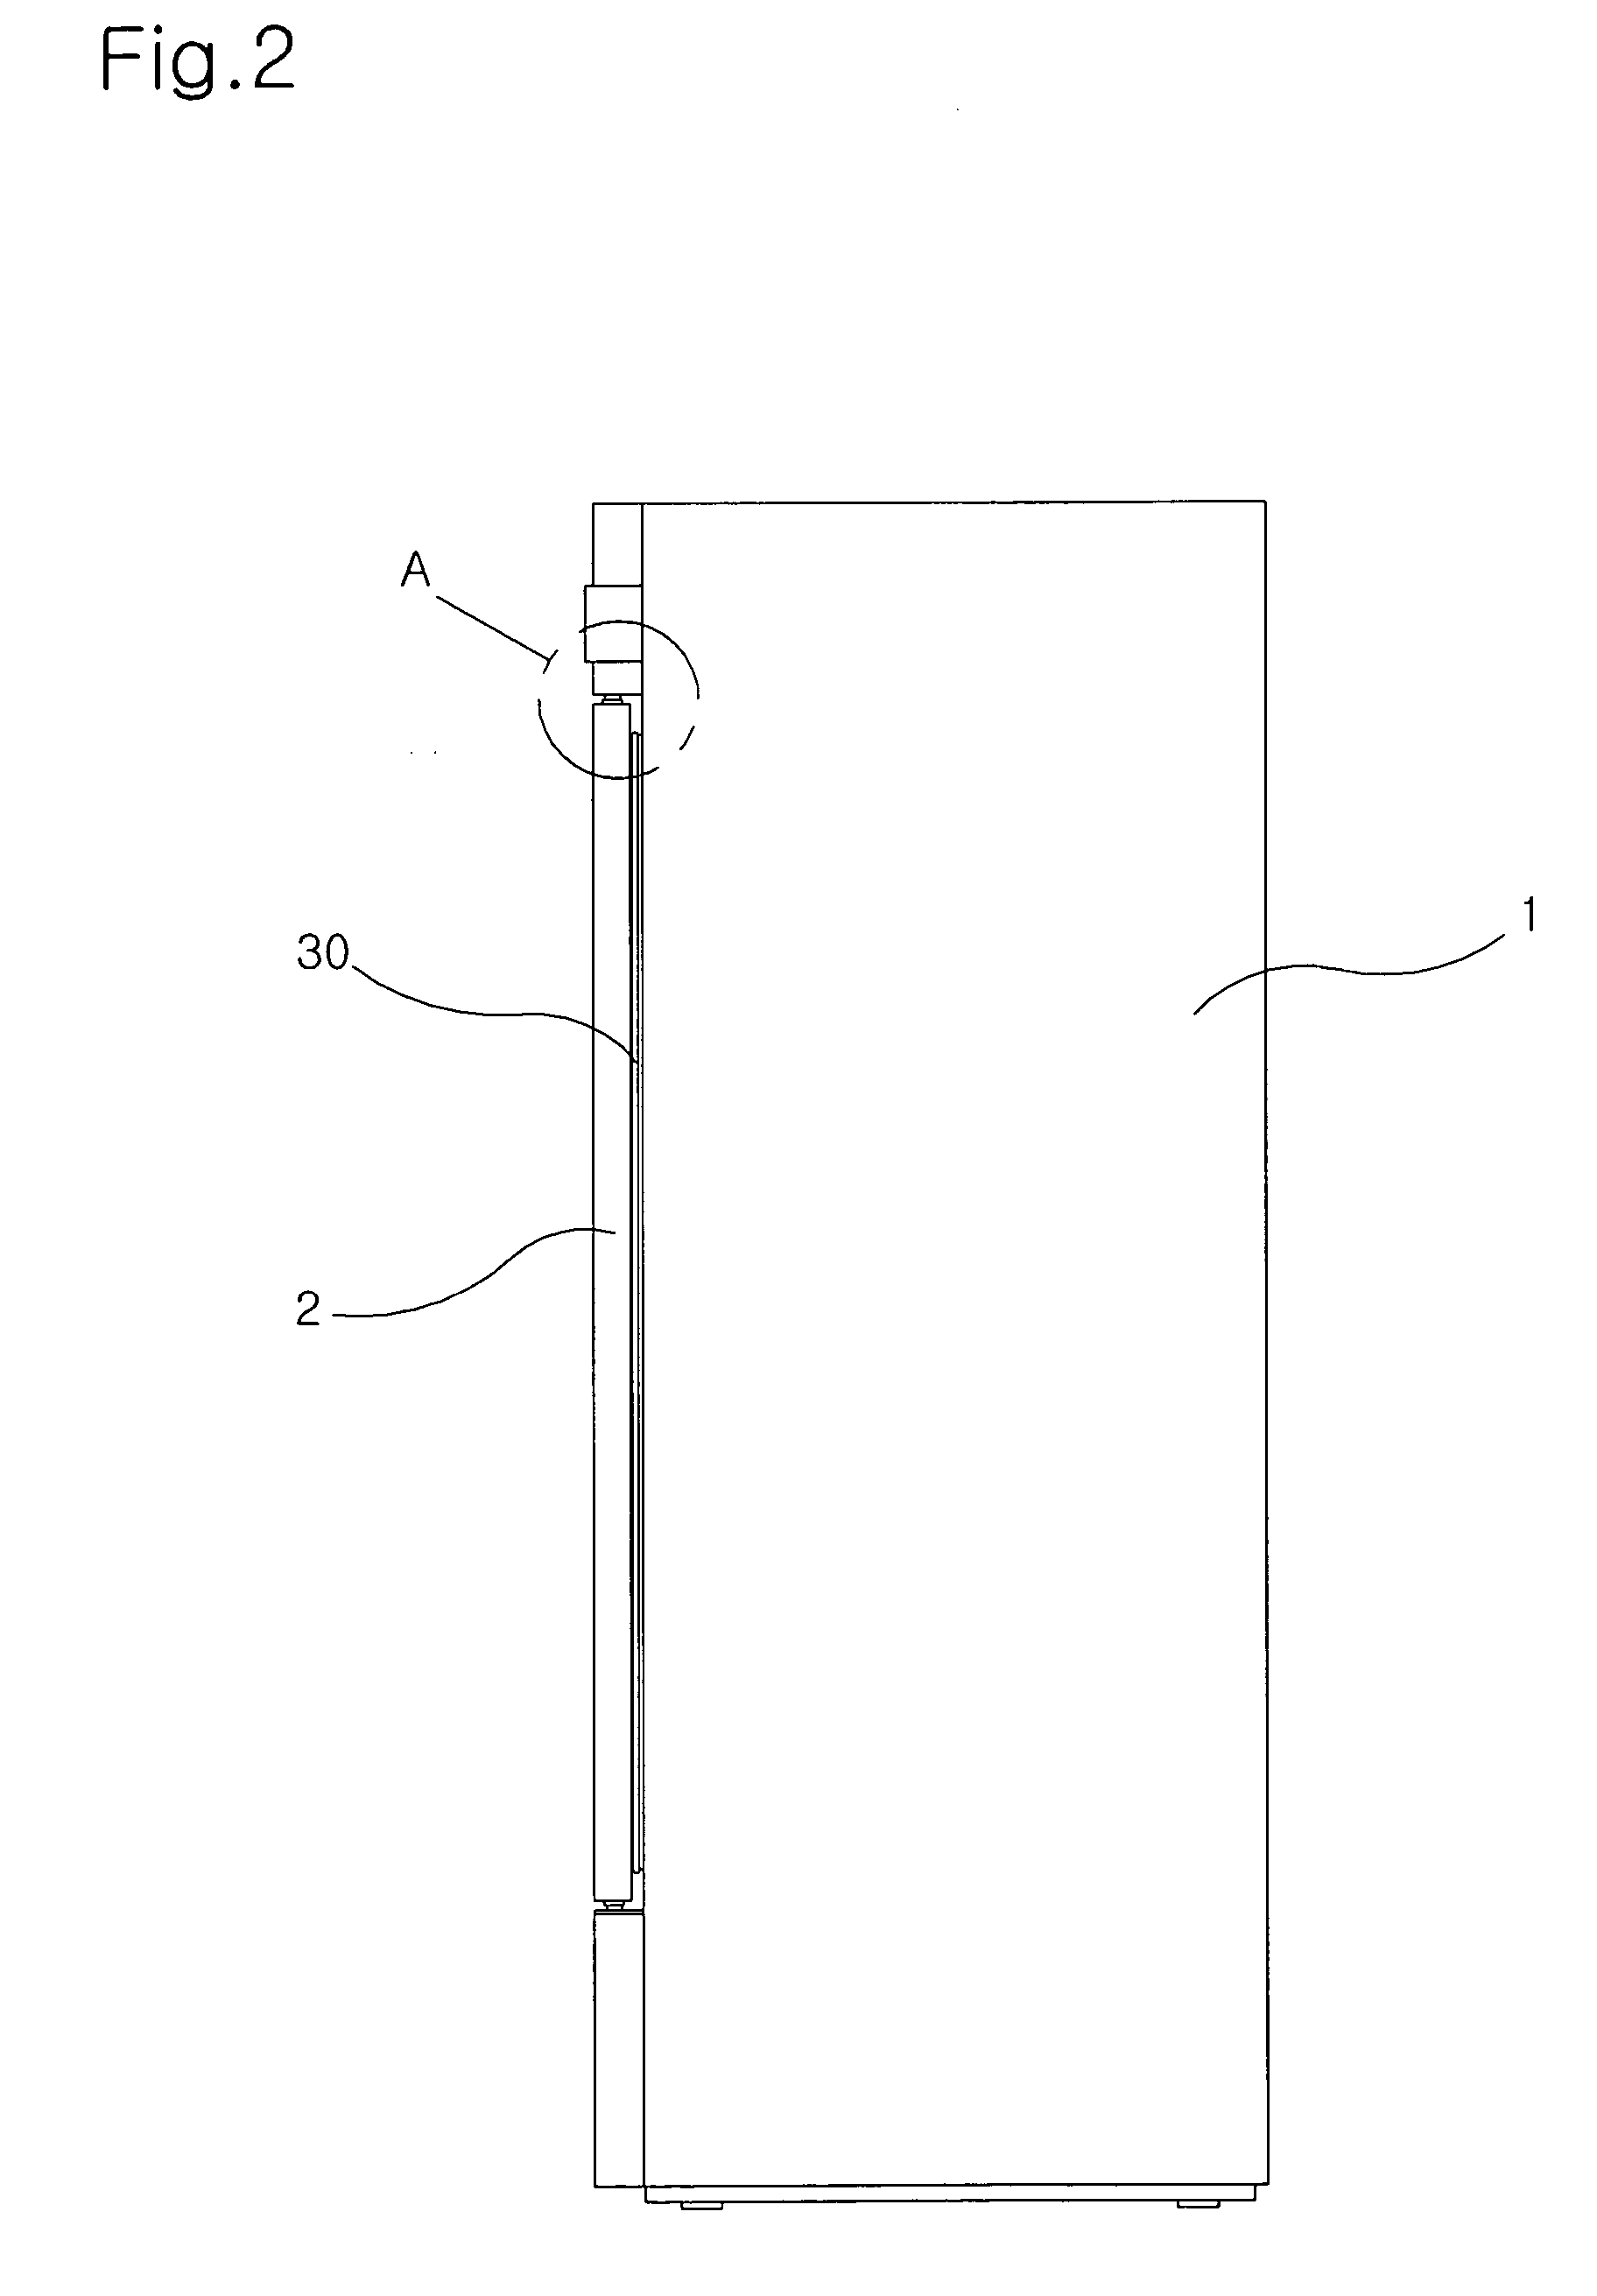 Door gasket structure for refrigerator